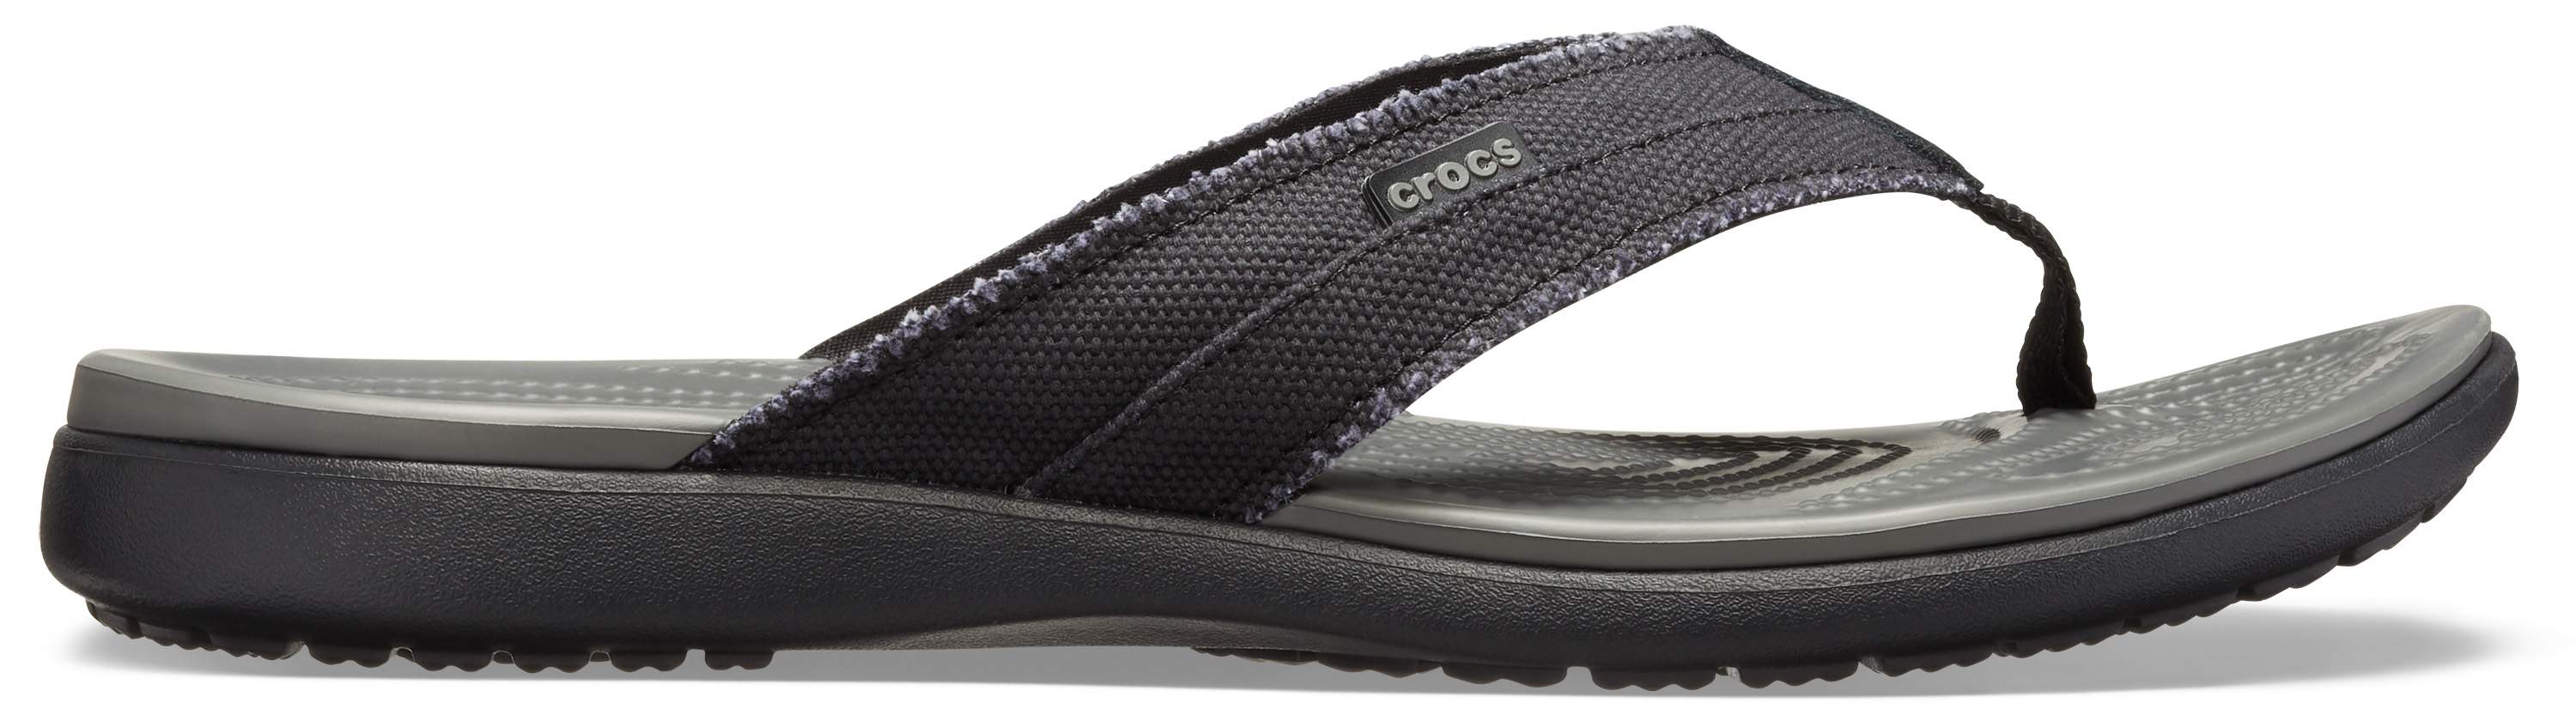 crocs dual comfort flip flops mens